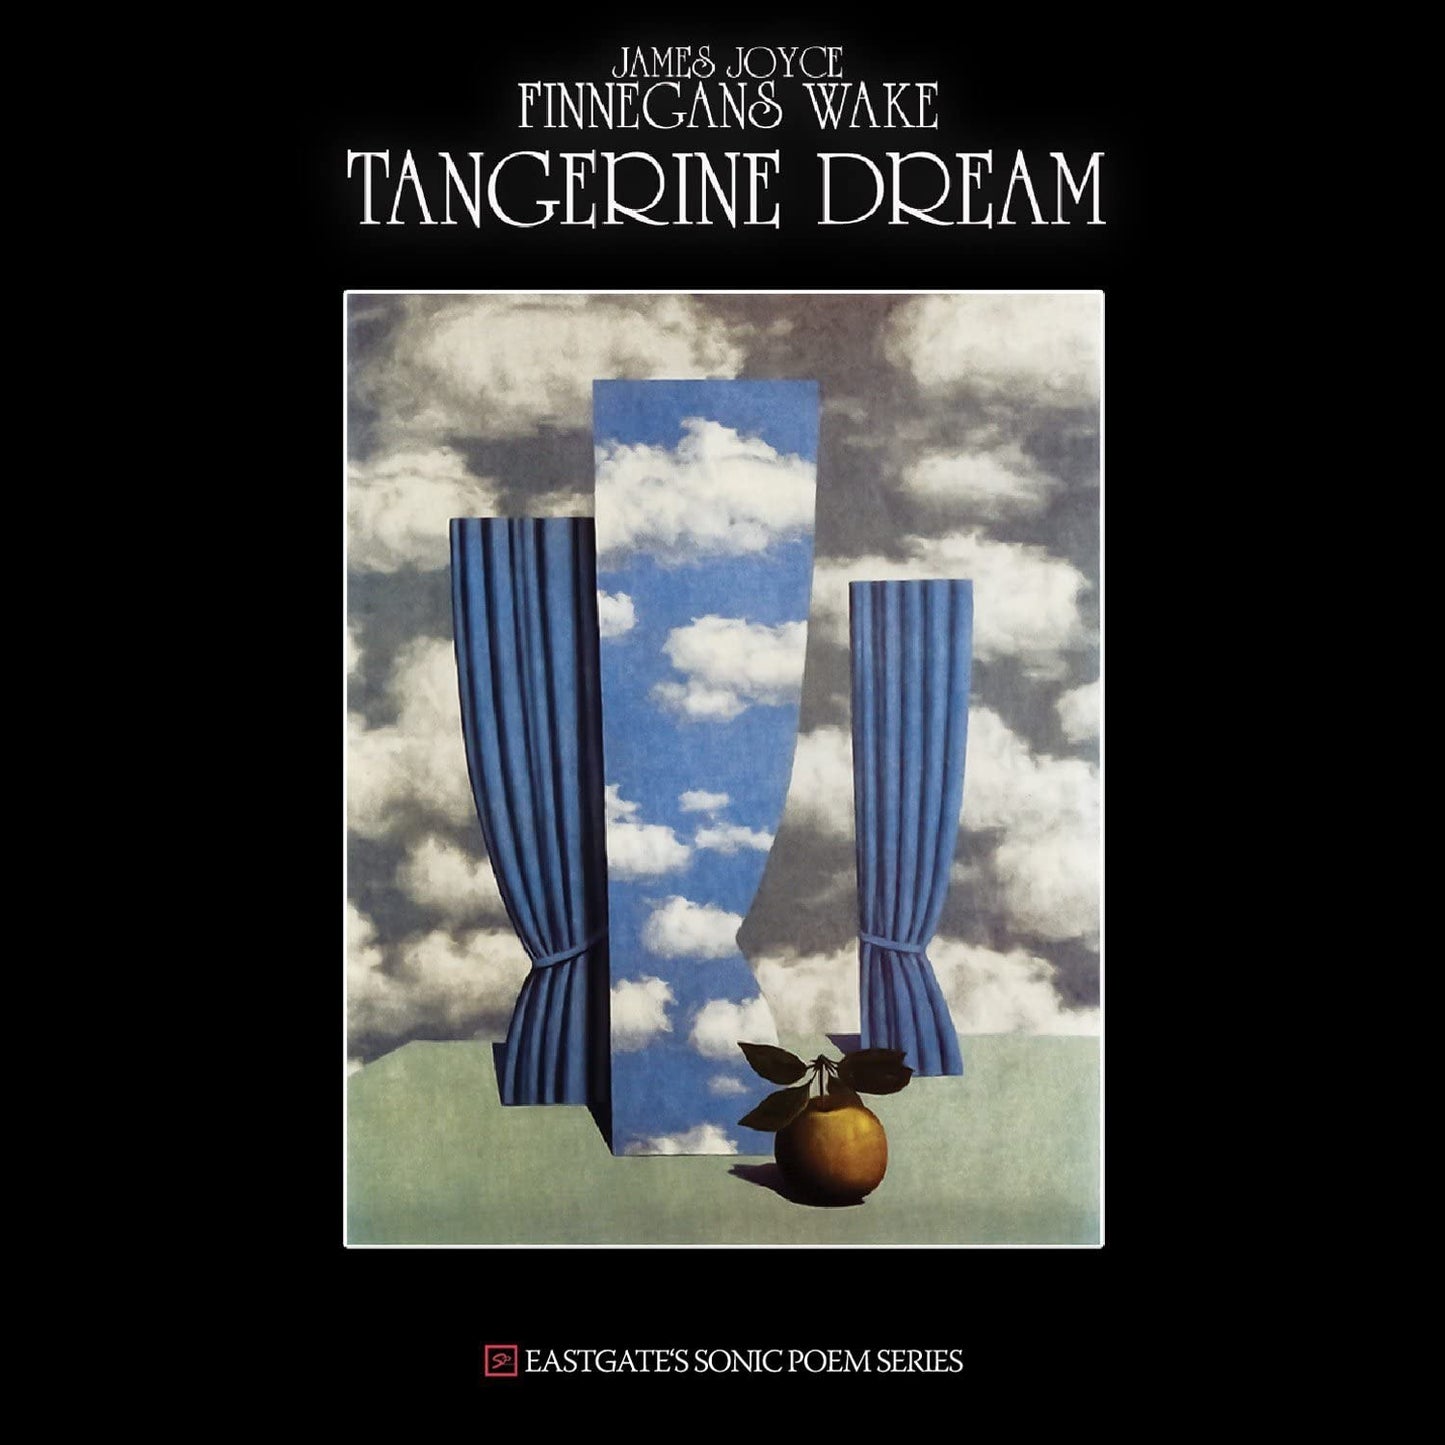 Tangerine Dream - James Joyce Finnegans Wake - CD